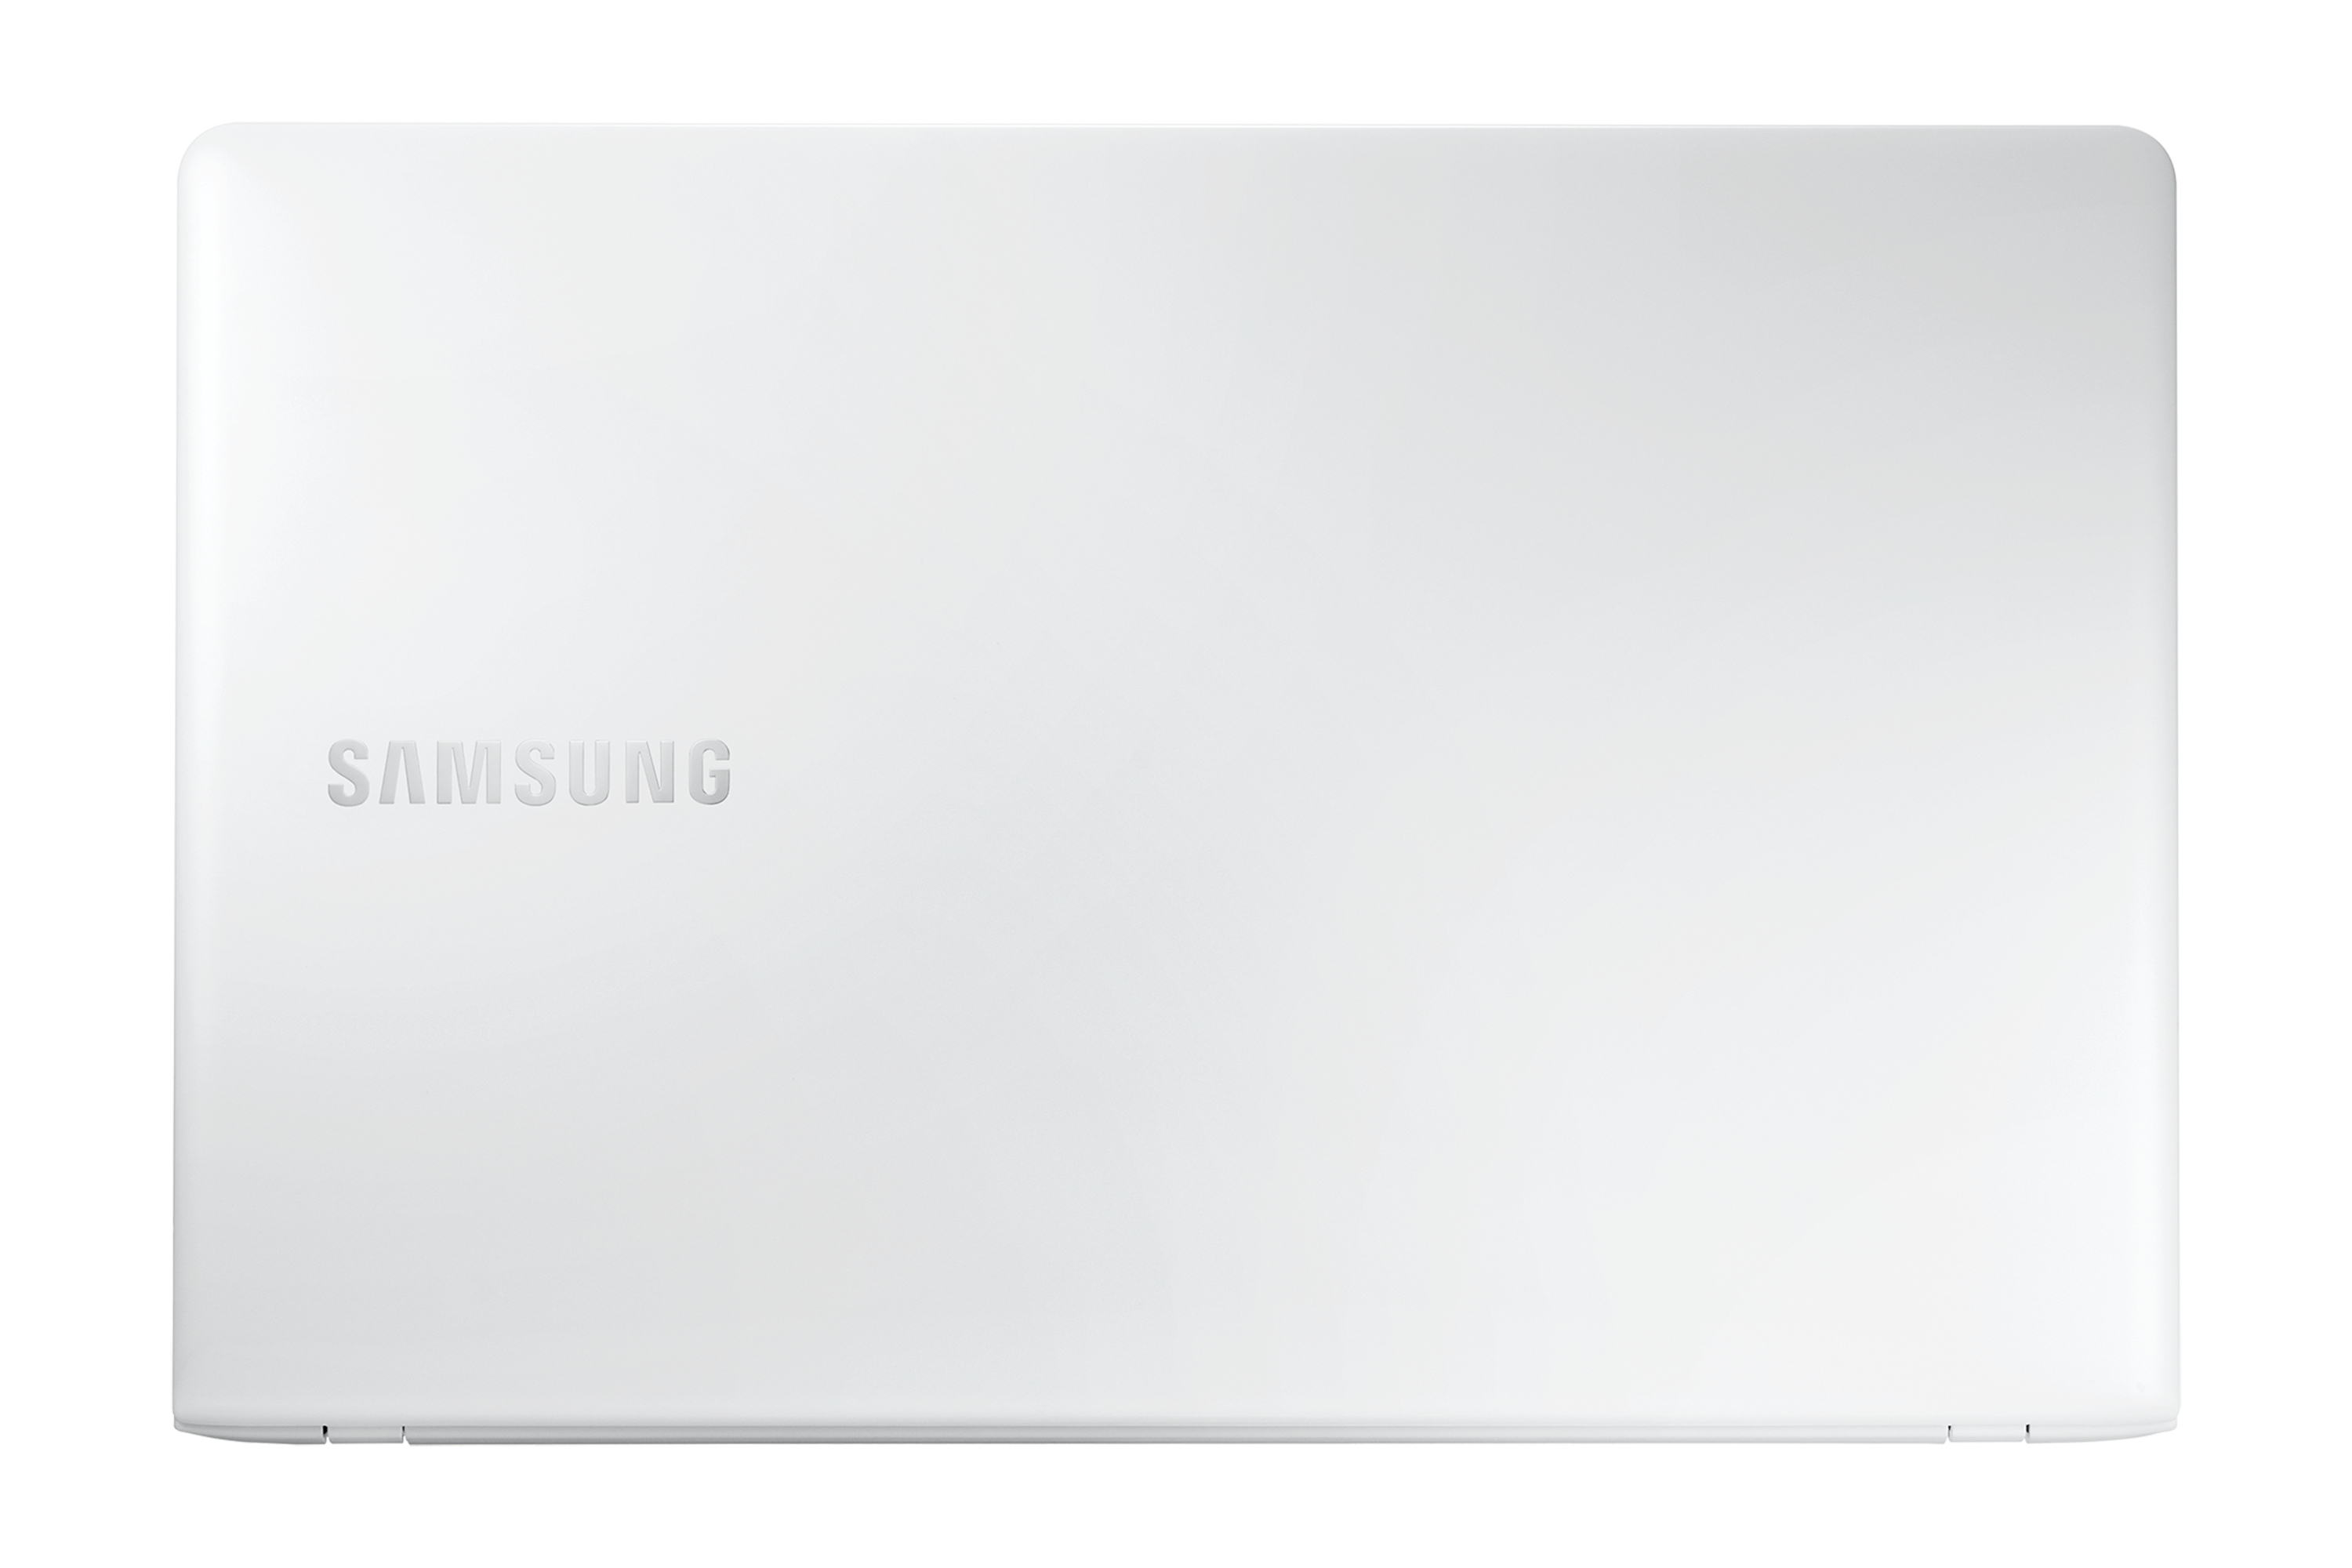 15.6 ноутбук uohuo lightbook. Ноутбук Samsung np370r5e. Ноутбук Haier LIGHTBOOK s378. Ноутбук Samsung ATIV book 4 450r5e. Крышка ноутбука Samsung np370r5e.